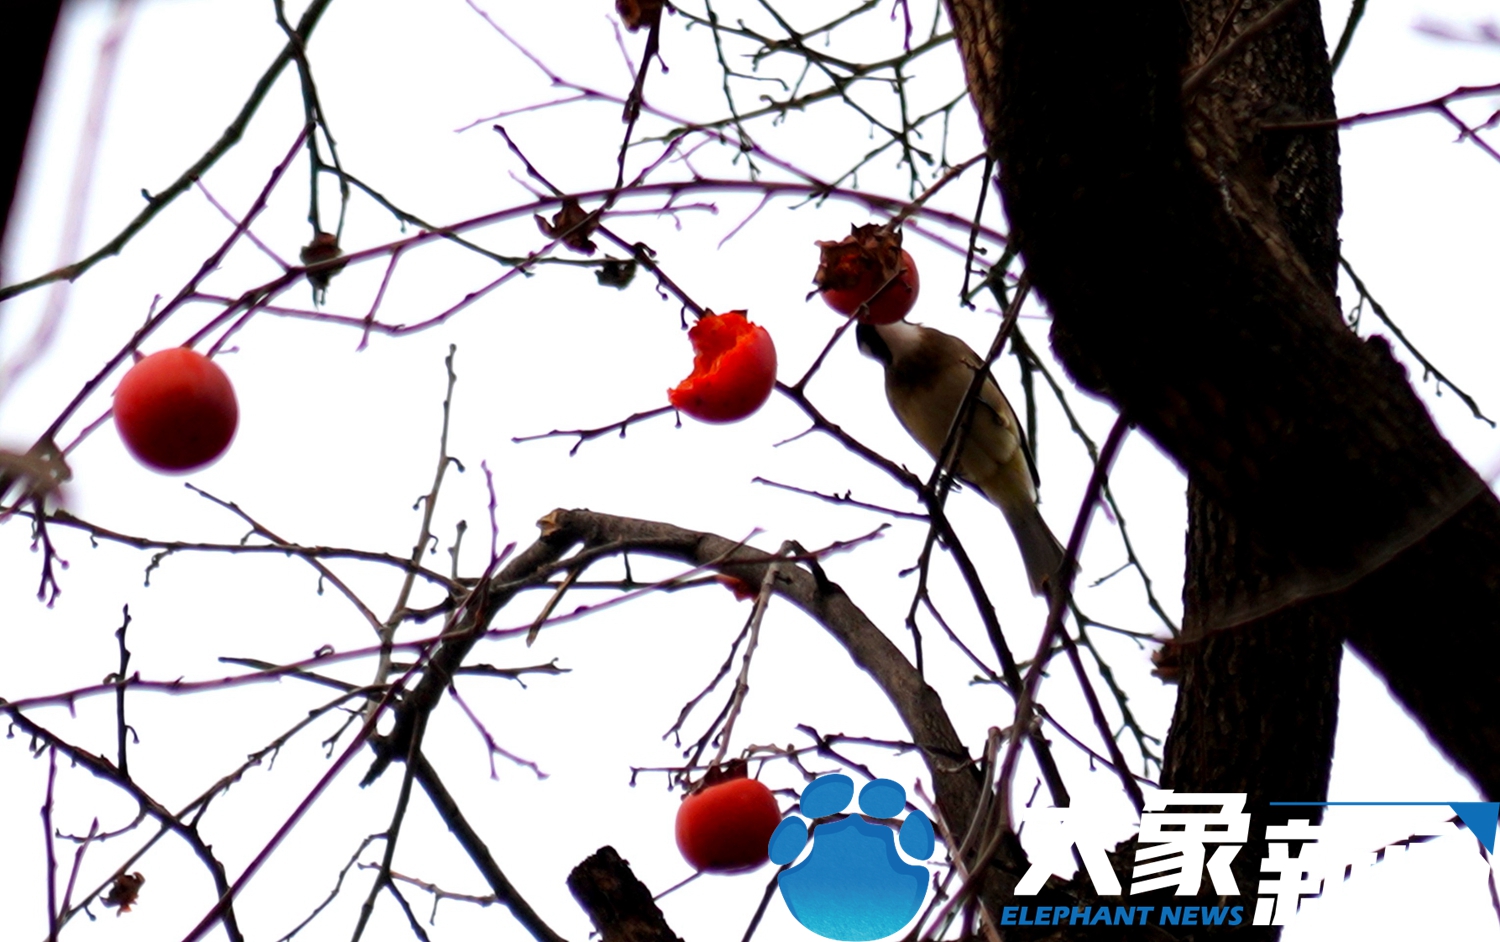 郑州多家公园相继开放 突然被冬季美到了